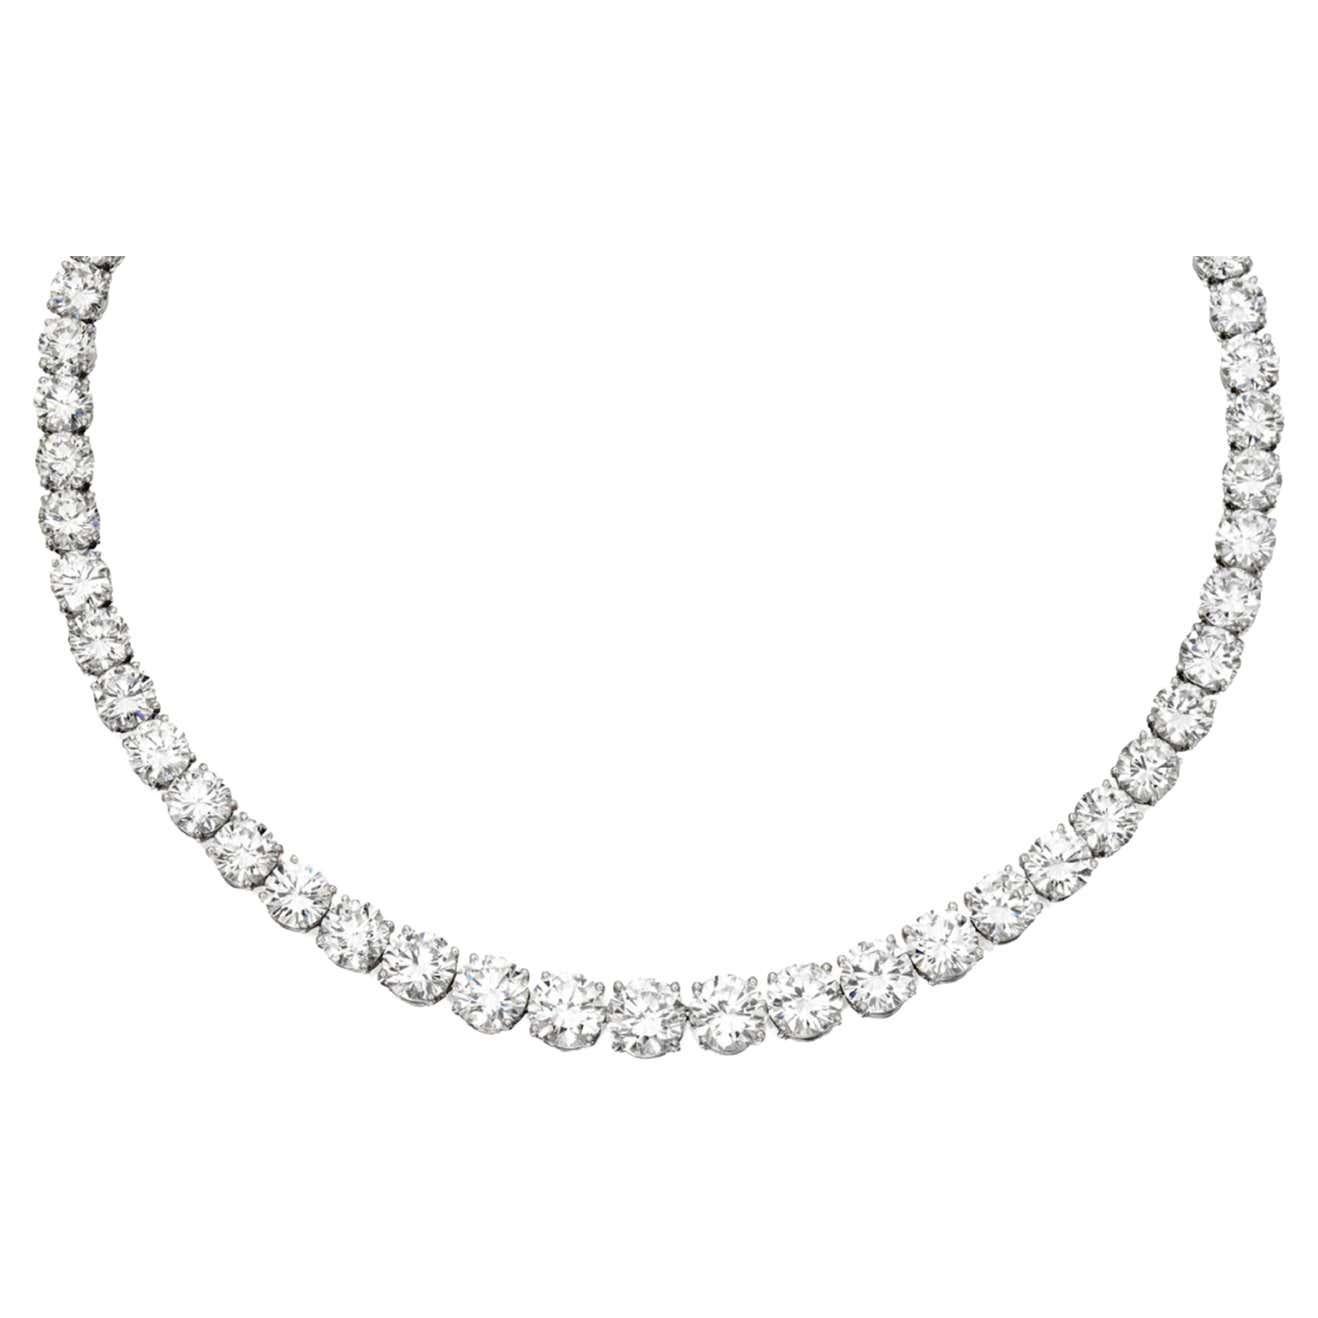 Entdecken Sie unvergleichliche Raffinesse mit unserer 16,25-Zoll-Tennis-Halskette, die sorgfältig aus luxuriösem 18-Karat-Weißgold gefertigt ist. Lassen Sie sich von 80 runden Diamanten mit einem Gesamtgewicht von 40,01 Karat verführen, die elegant